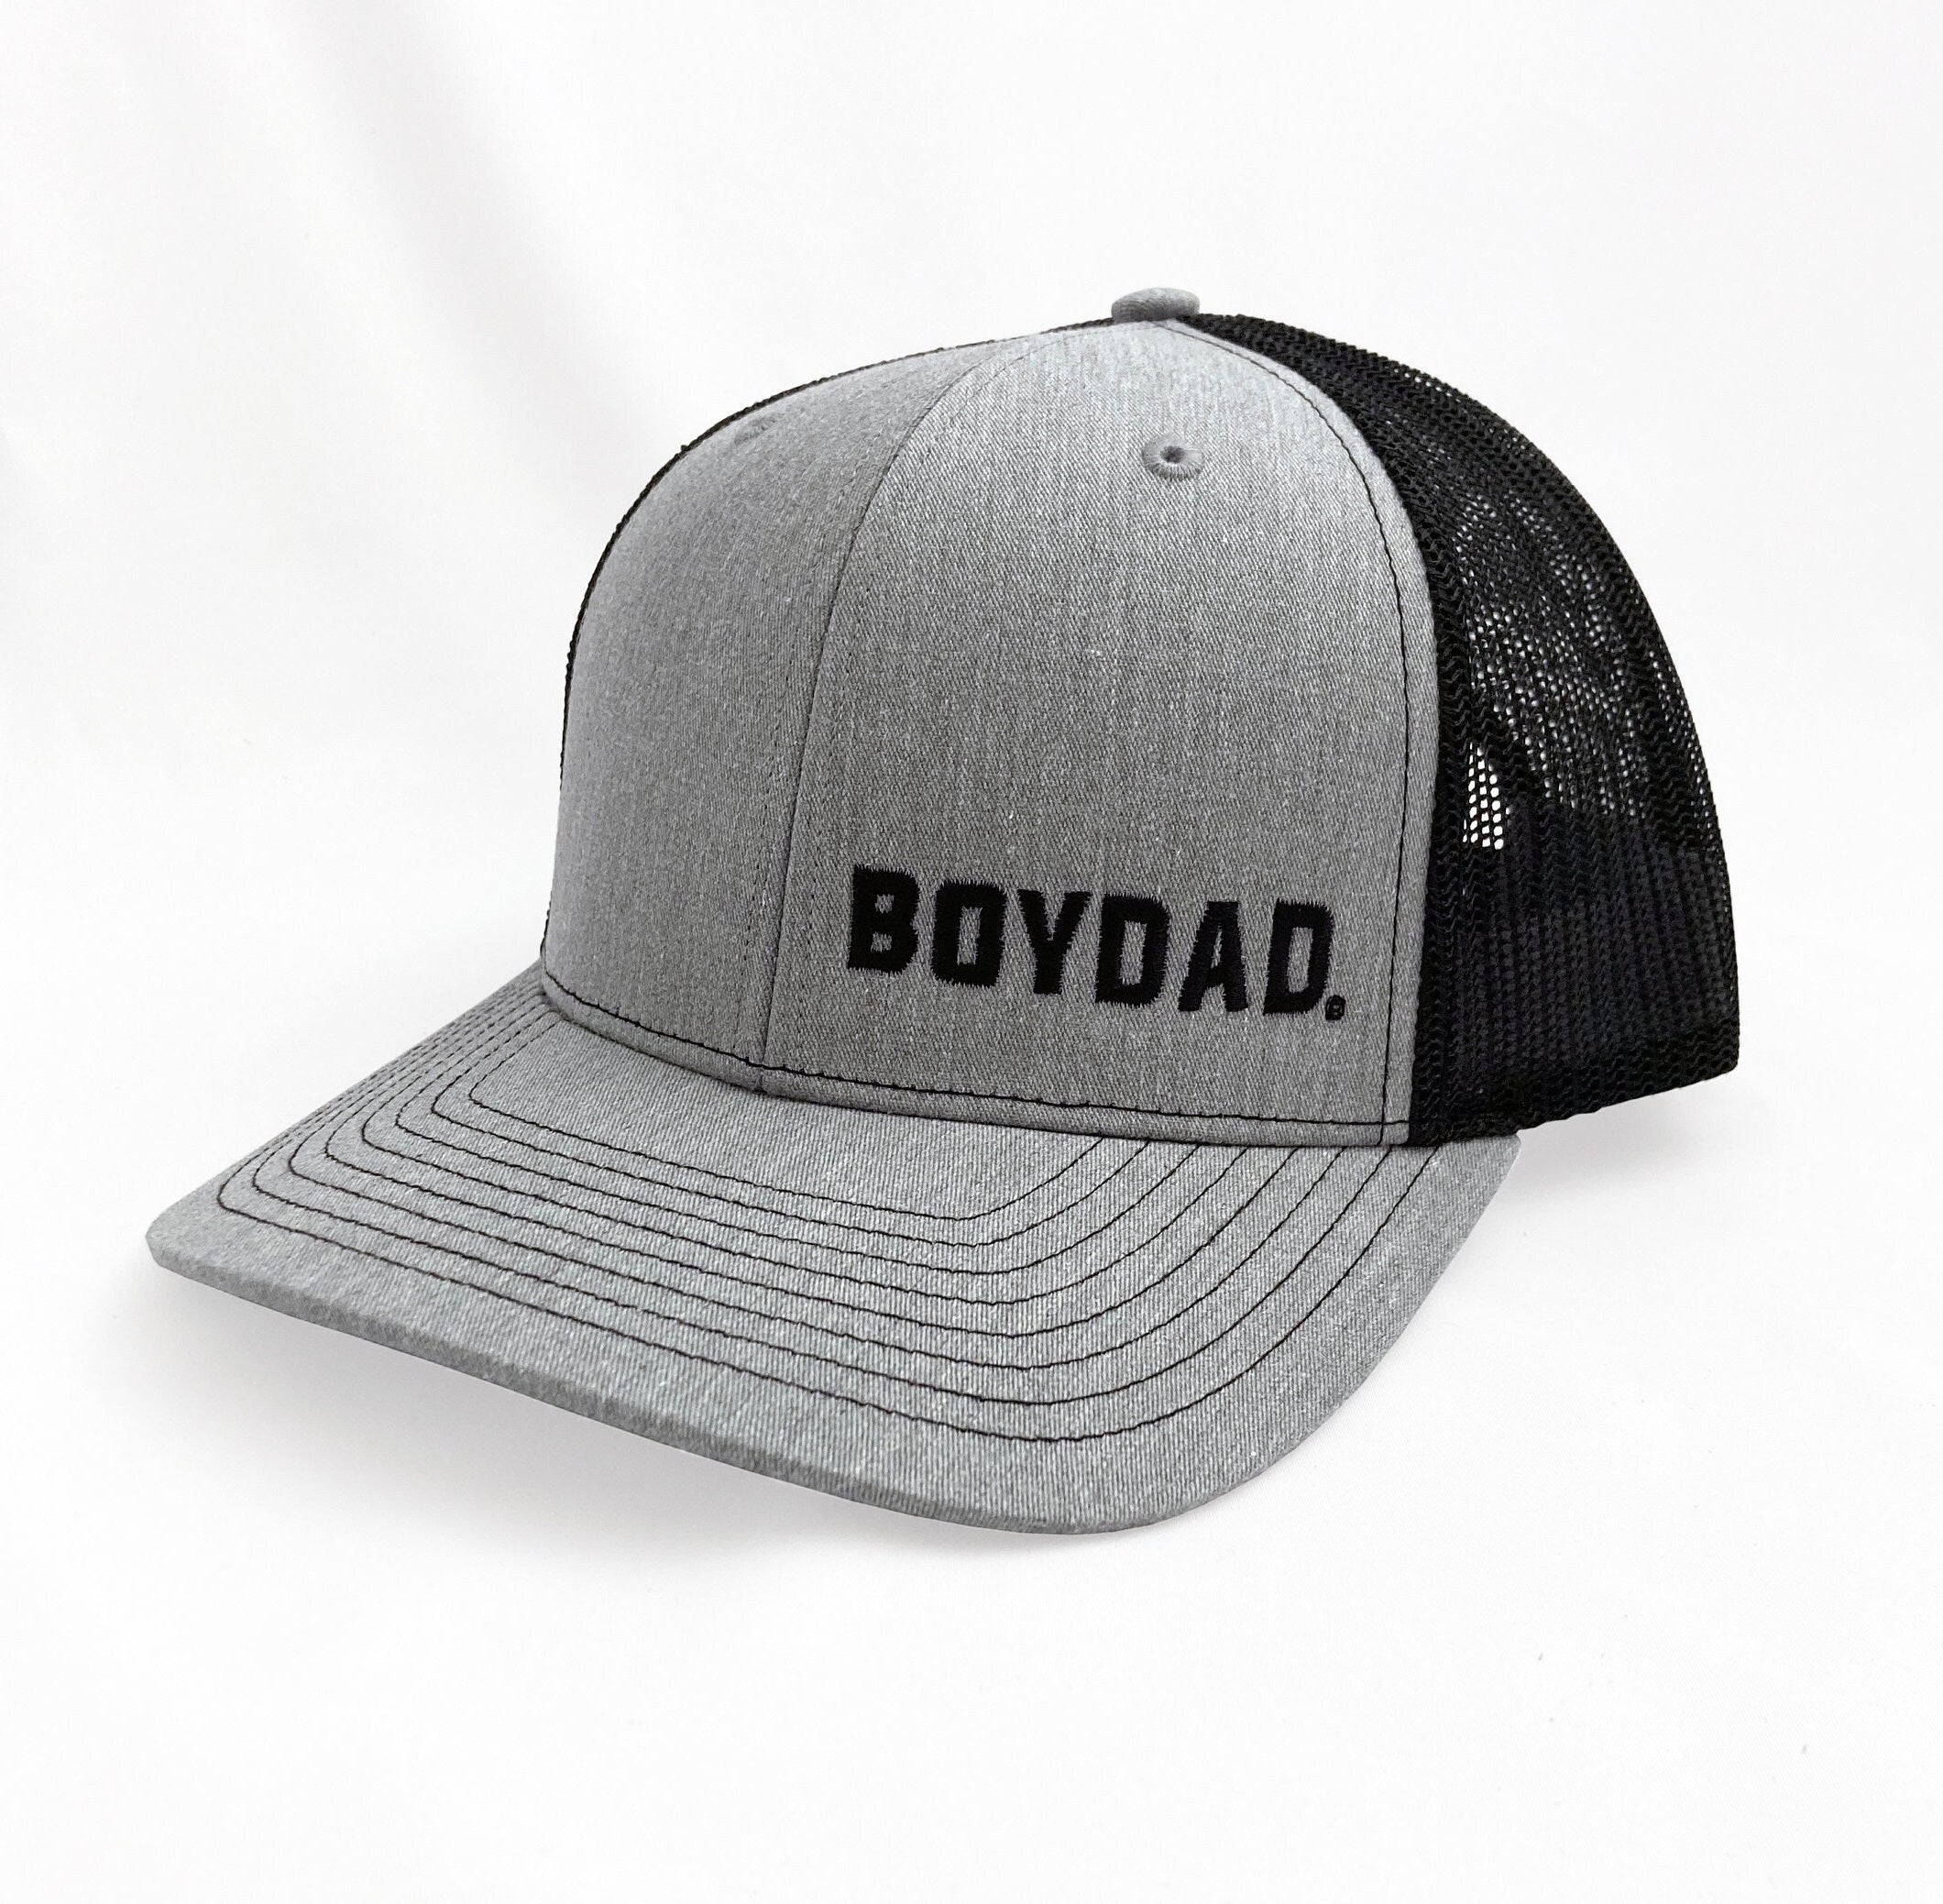 Boydad® & Dad's Boy Heather Grey/Black Structured Matching Hat